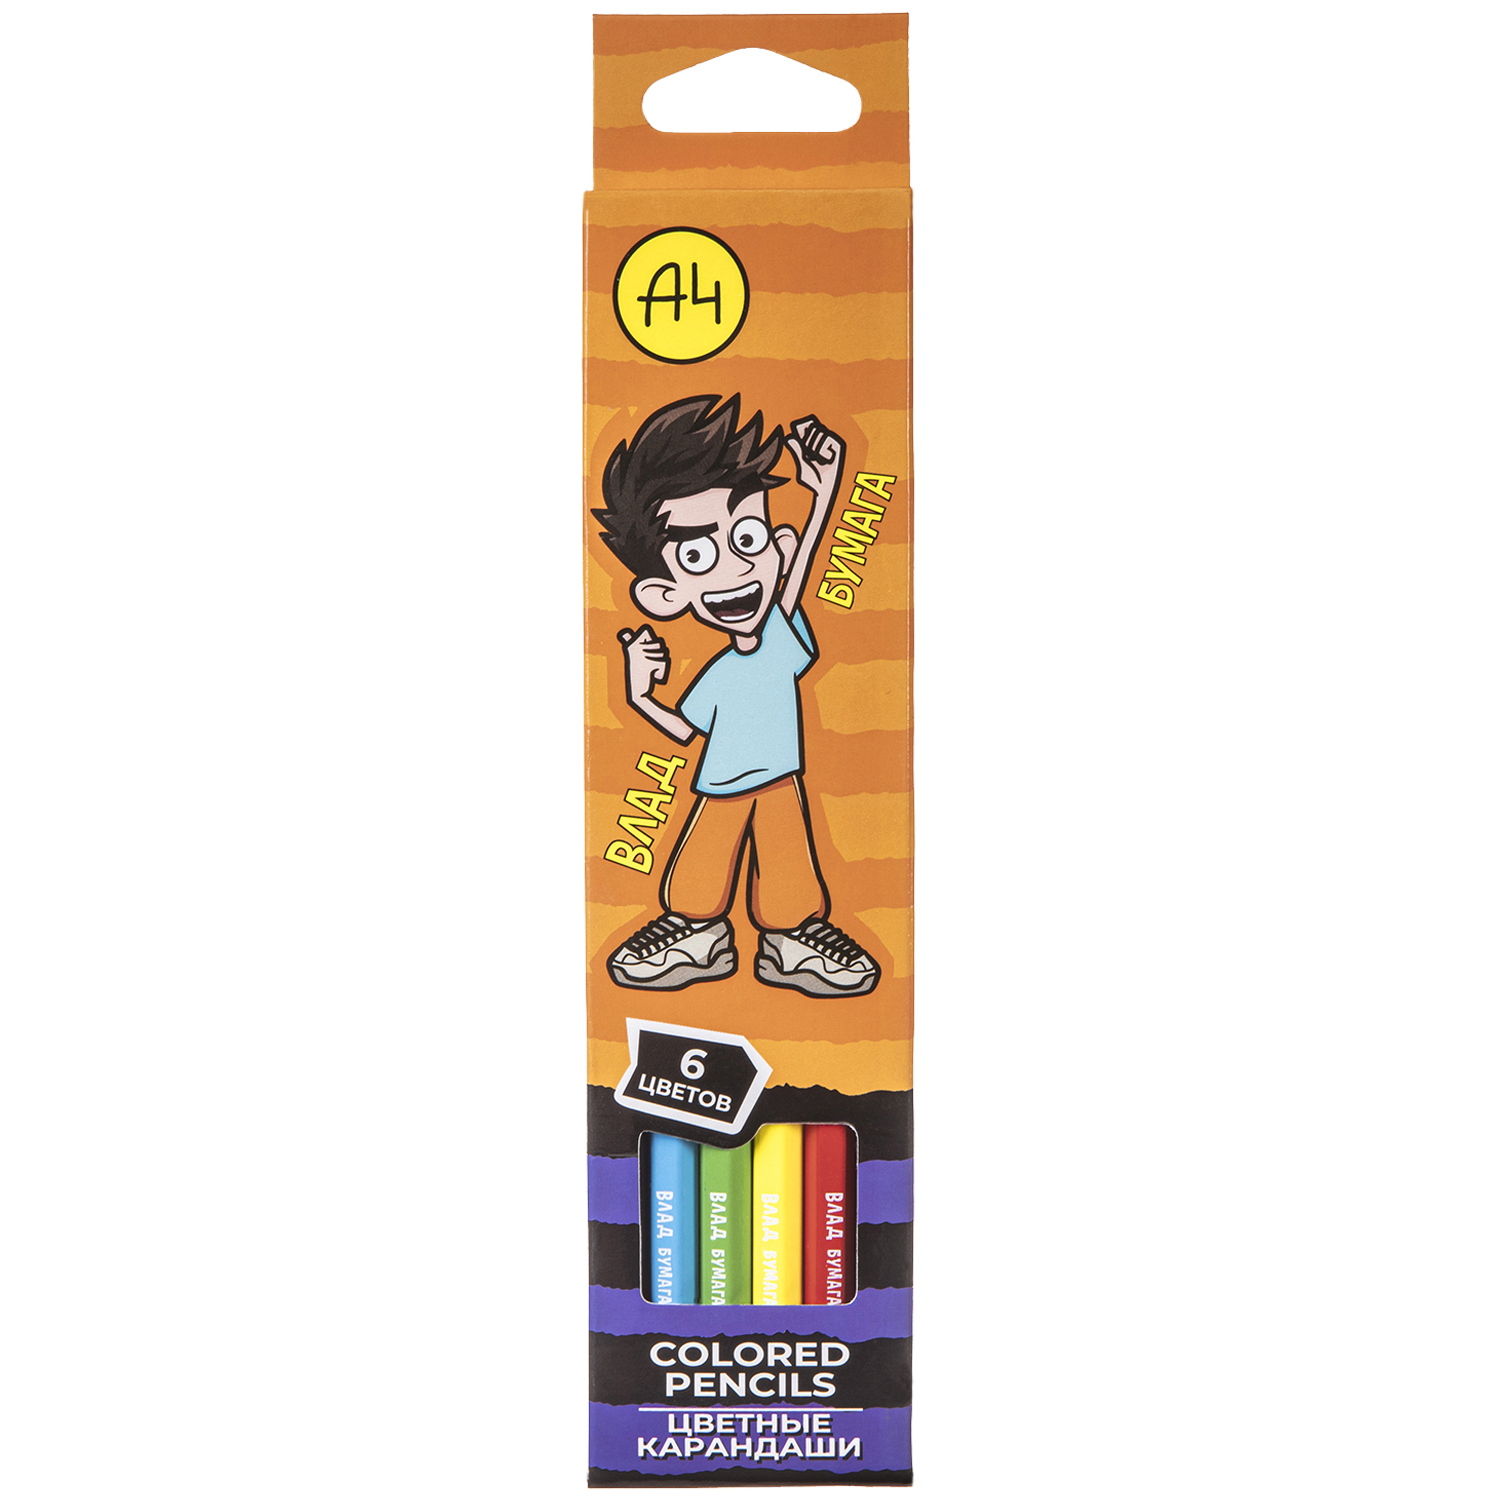 Короткие карандаши в виде упаковки карандашей Влада а 4